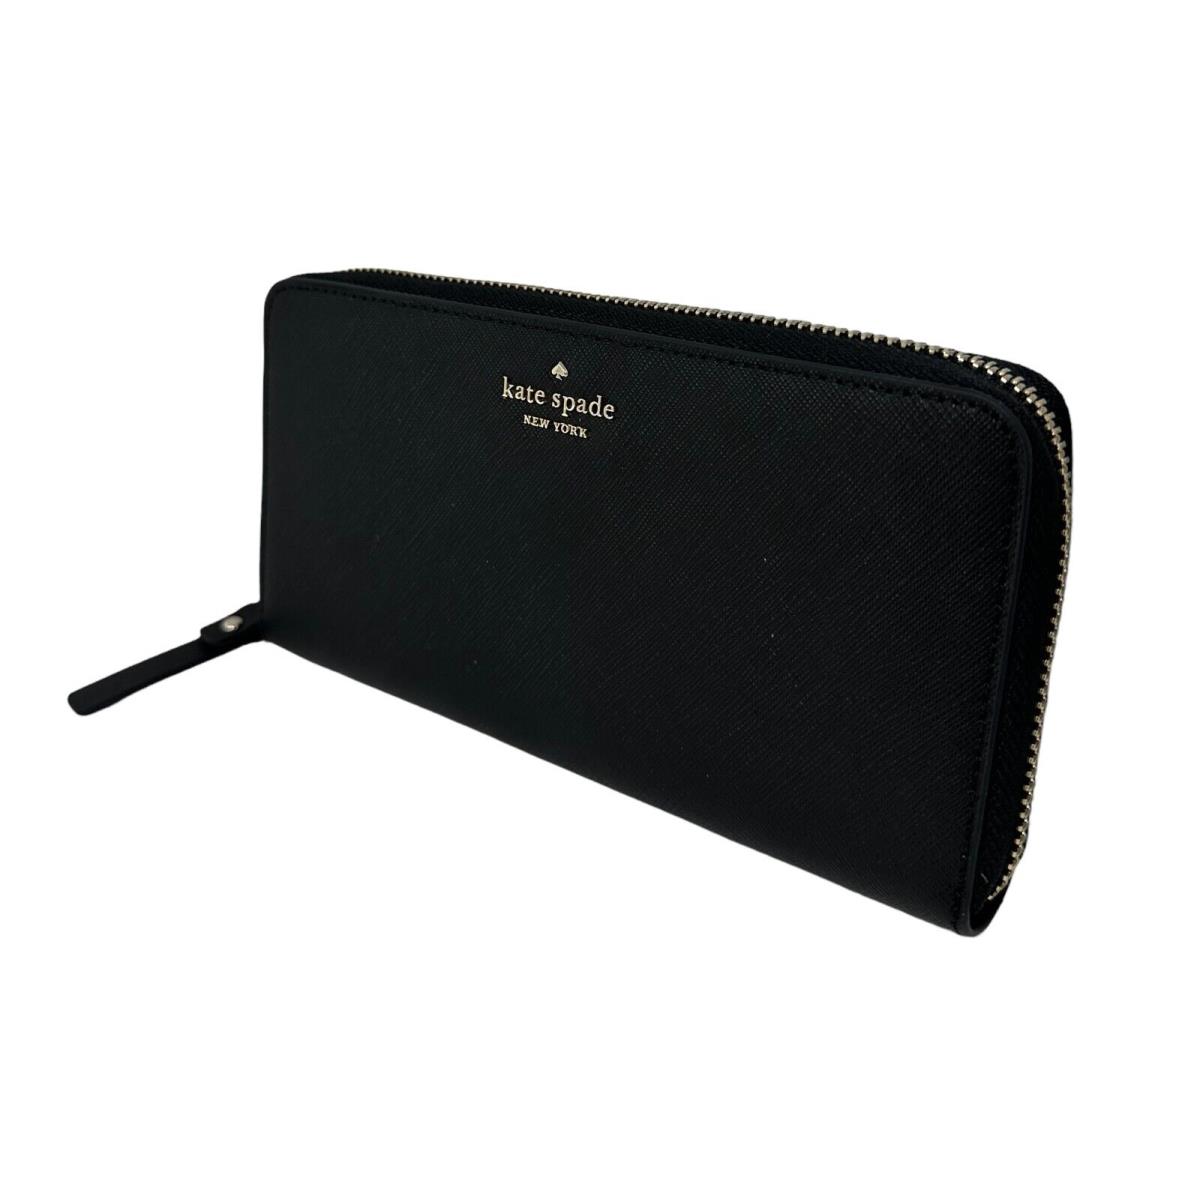 Kate Spade Laurel Way Neda Large Black Saffiamo Leather Wallet WLRU6061